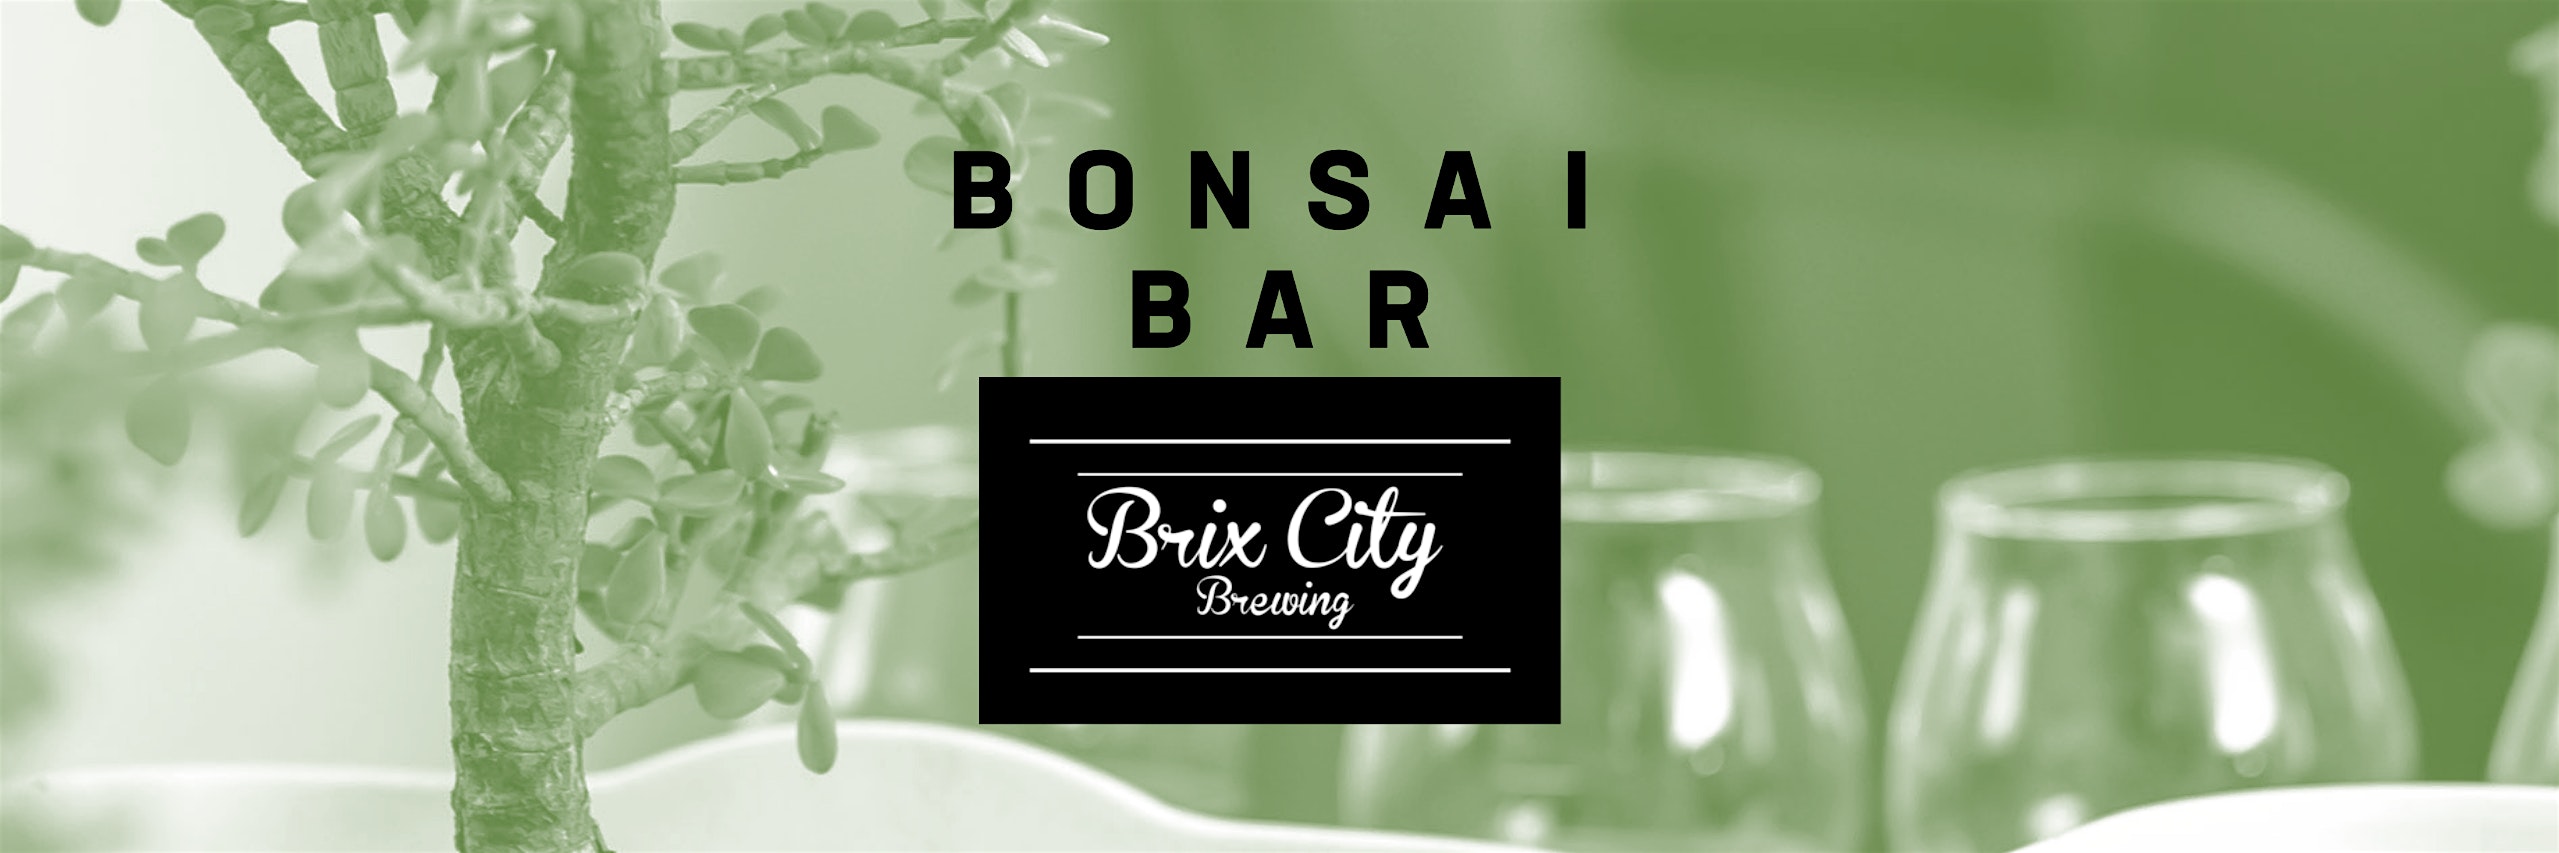 Copy of Bonsai Bar @ Brix City Brewing